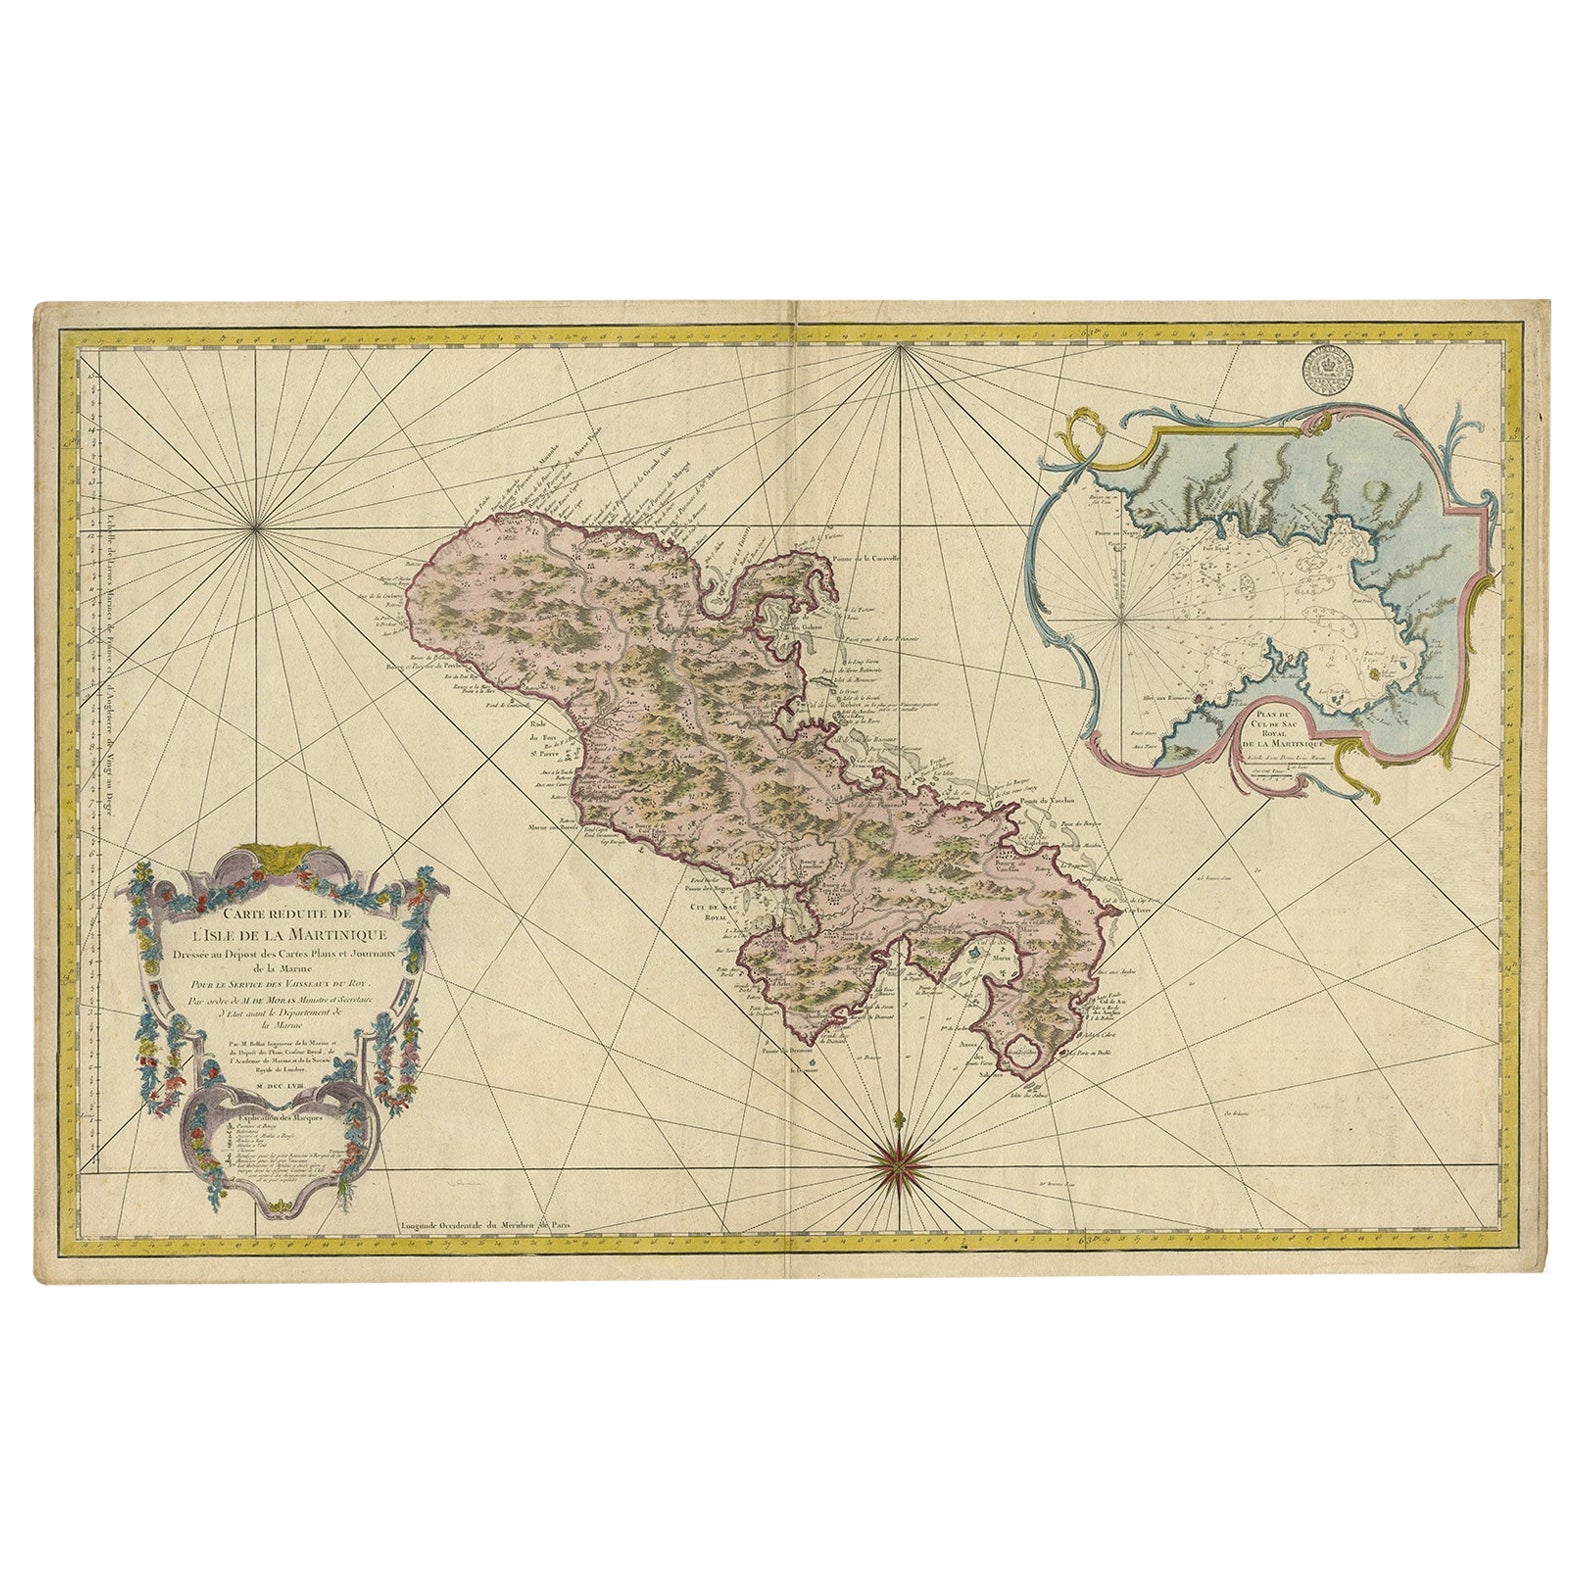 Superbe carte ancienne de Martinique à grande échelle, rare, publiée en 1758